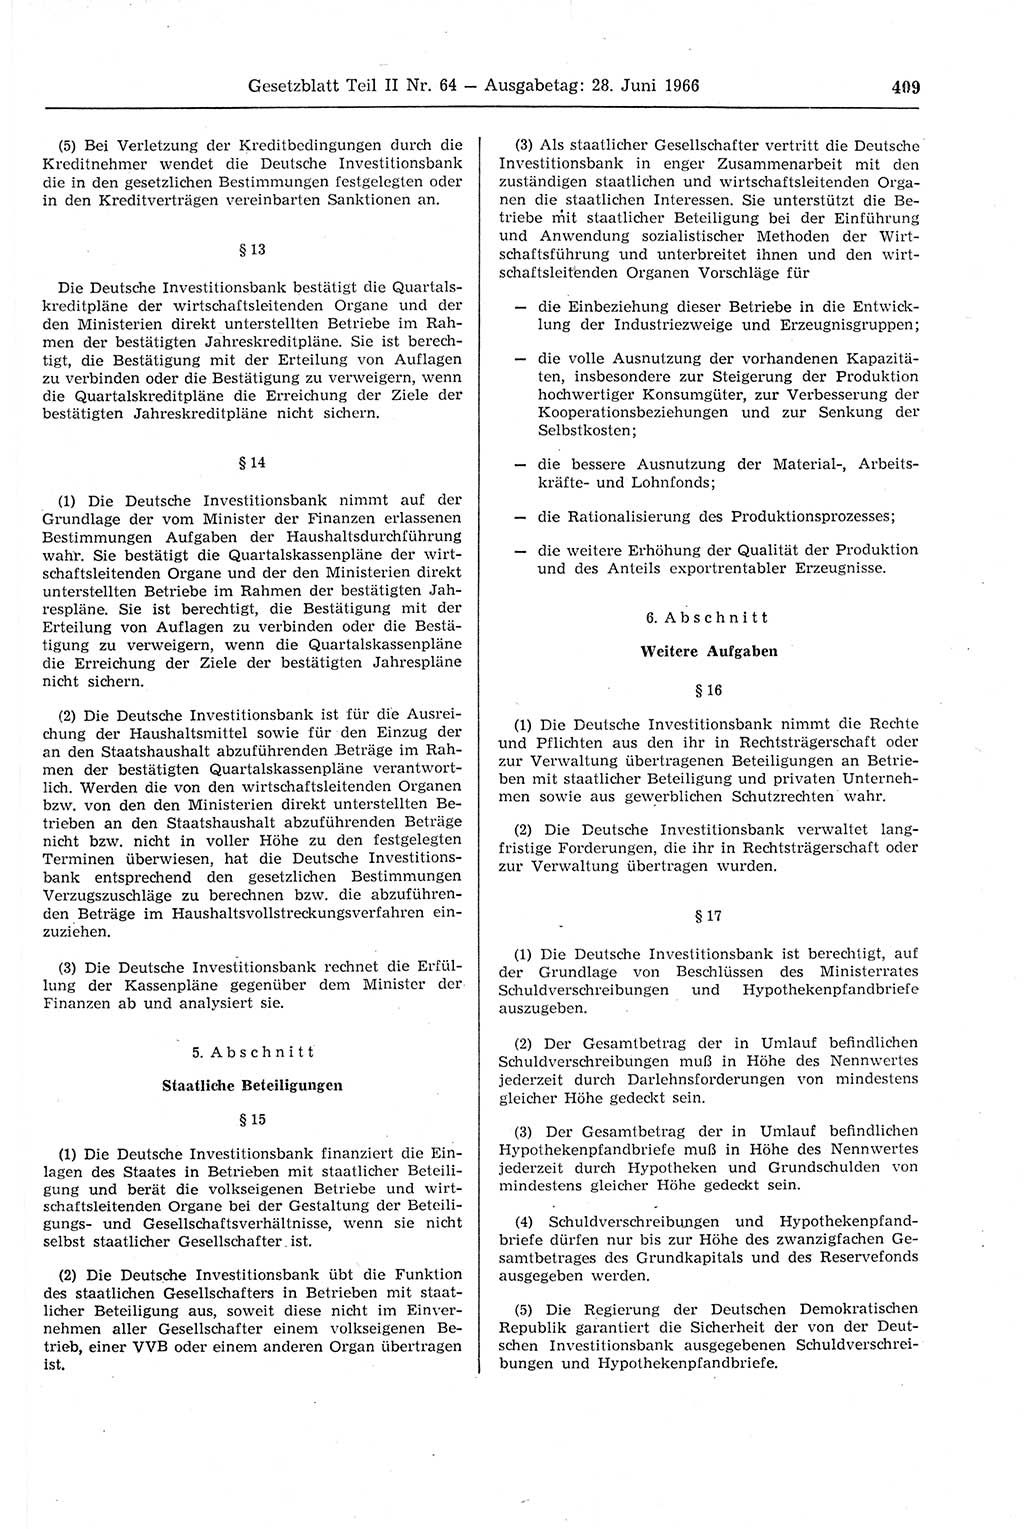 Gesetzblatt (GBl.) der Deutschen Demokratischen Republik (DDR) Teil ⅠⅠ 1966, Seite 409 (GBl. DDR ⅠⅠ 1966, S. 409)